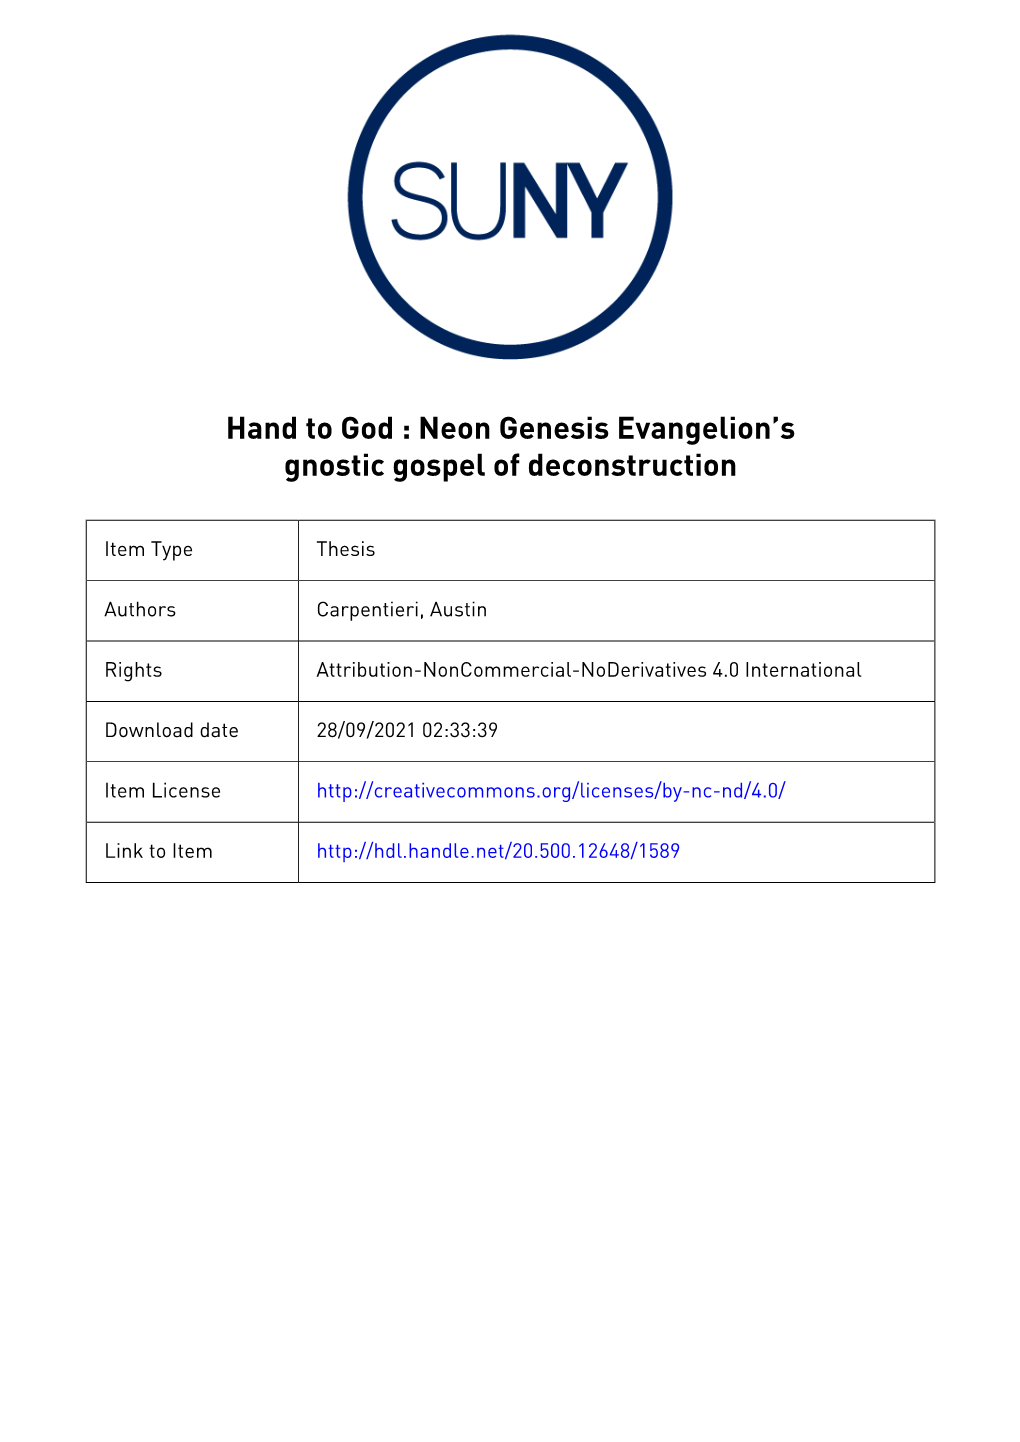 Neon Genesis Evangelion's Gnostic Gospel of Deconstruction